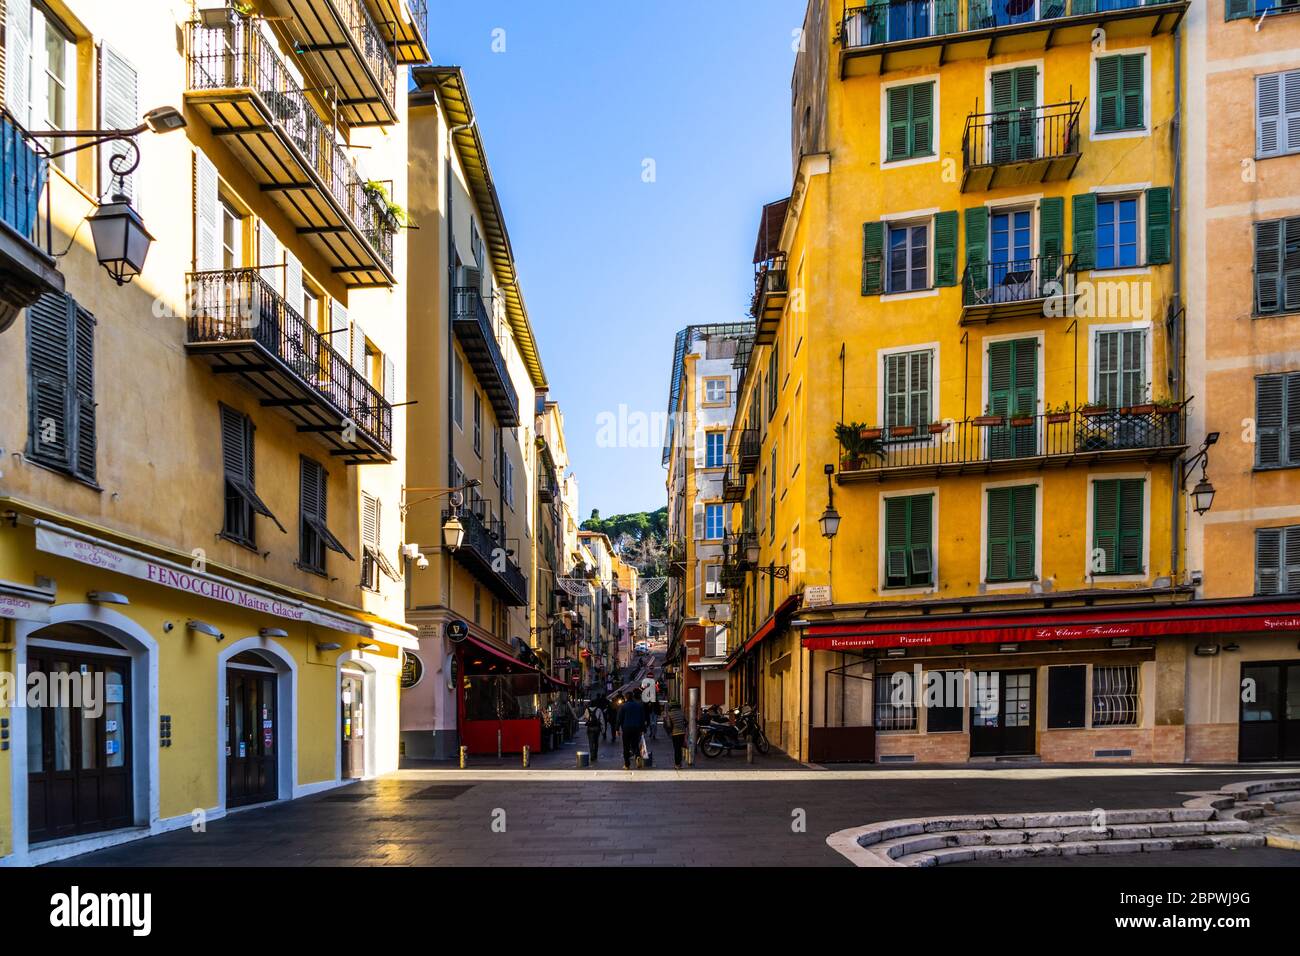 Vue sur la place Rossetti, l'une des plus importantes places de la vieille ville de Nice. De la place Rossetti au départ de la rue Rossetti menant au château de Nice Banque D'Images